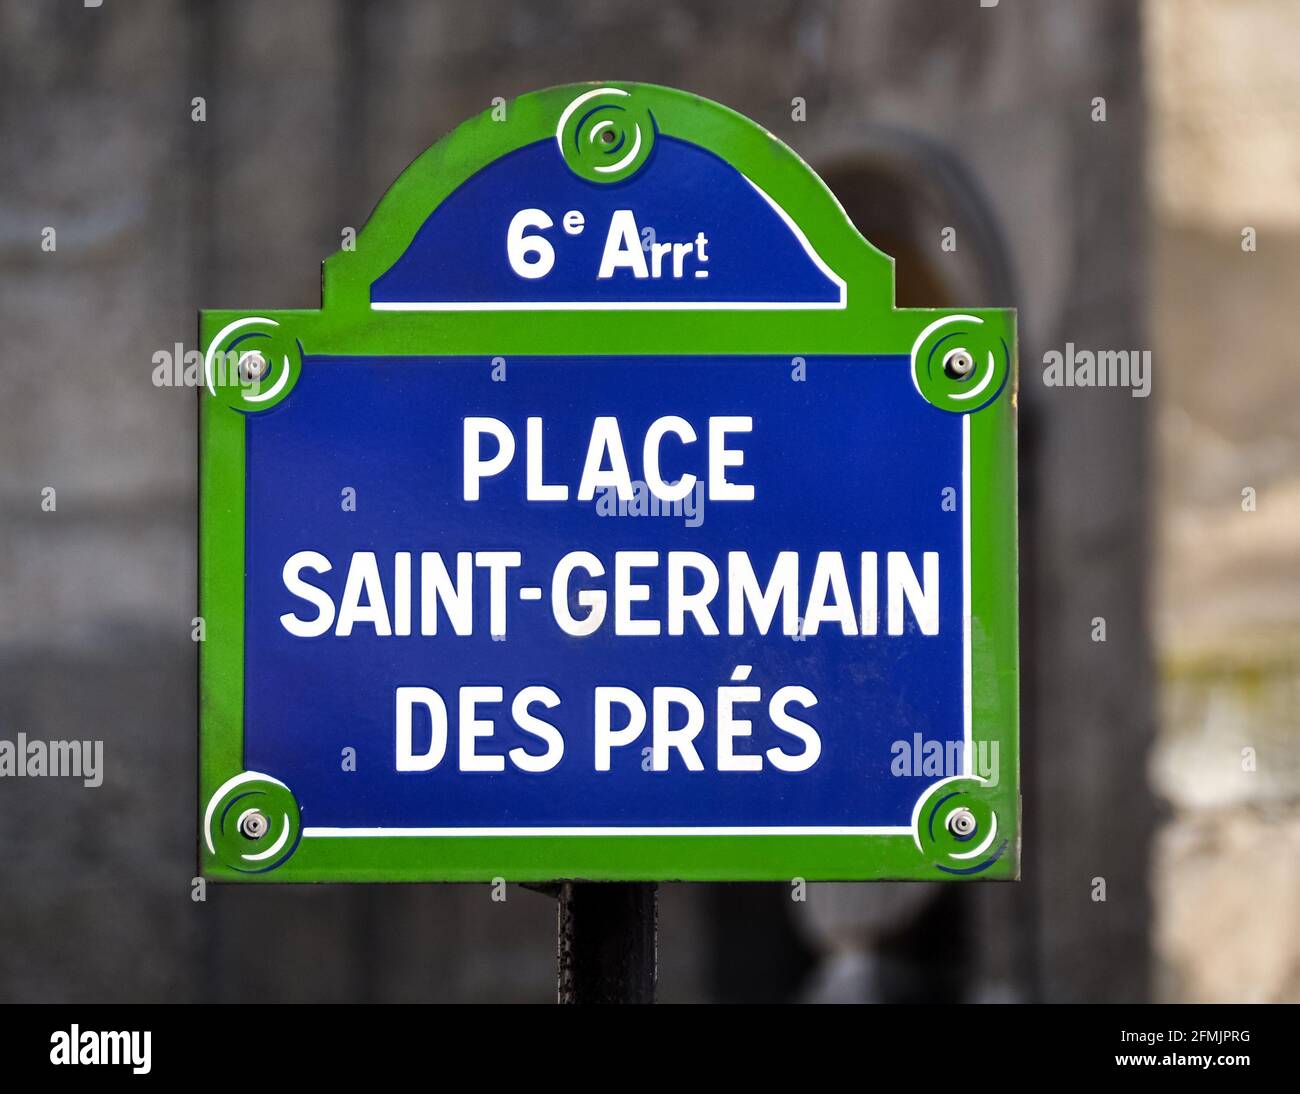 Place Saint-Germain des Prés street sign in Paris, France Stock Photo